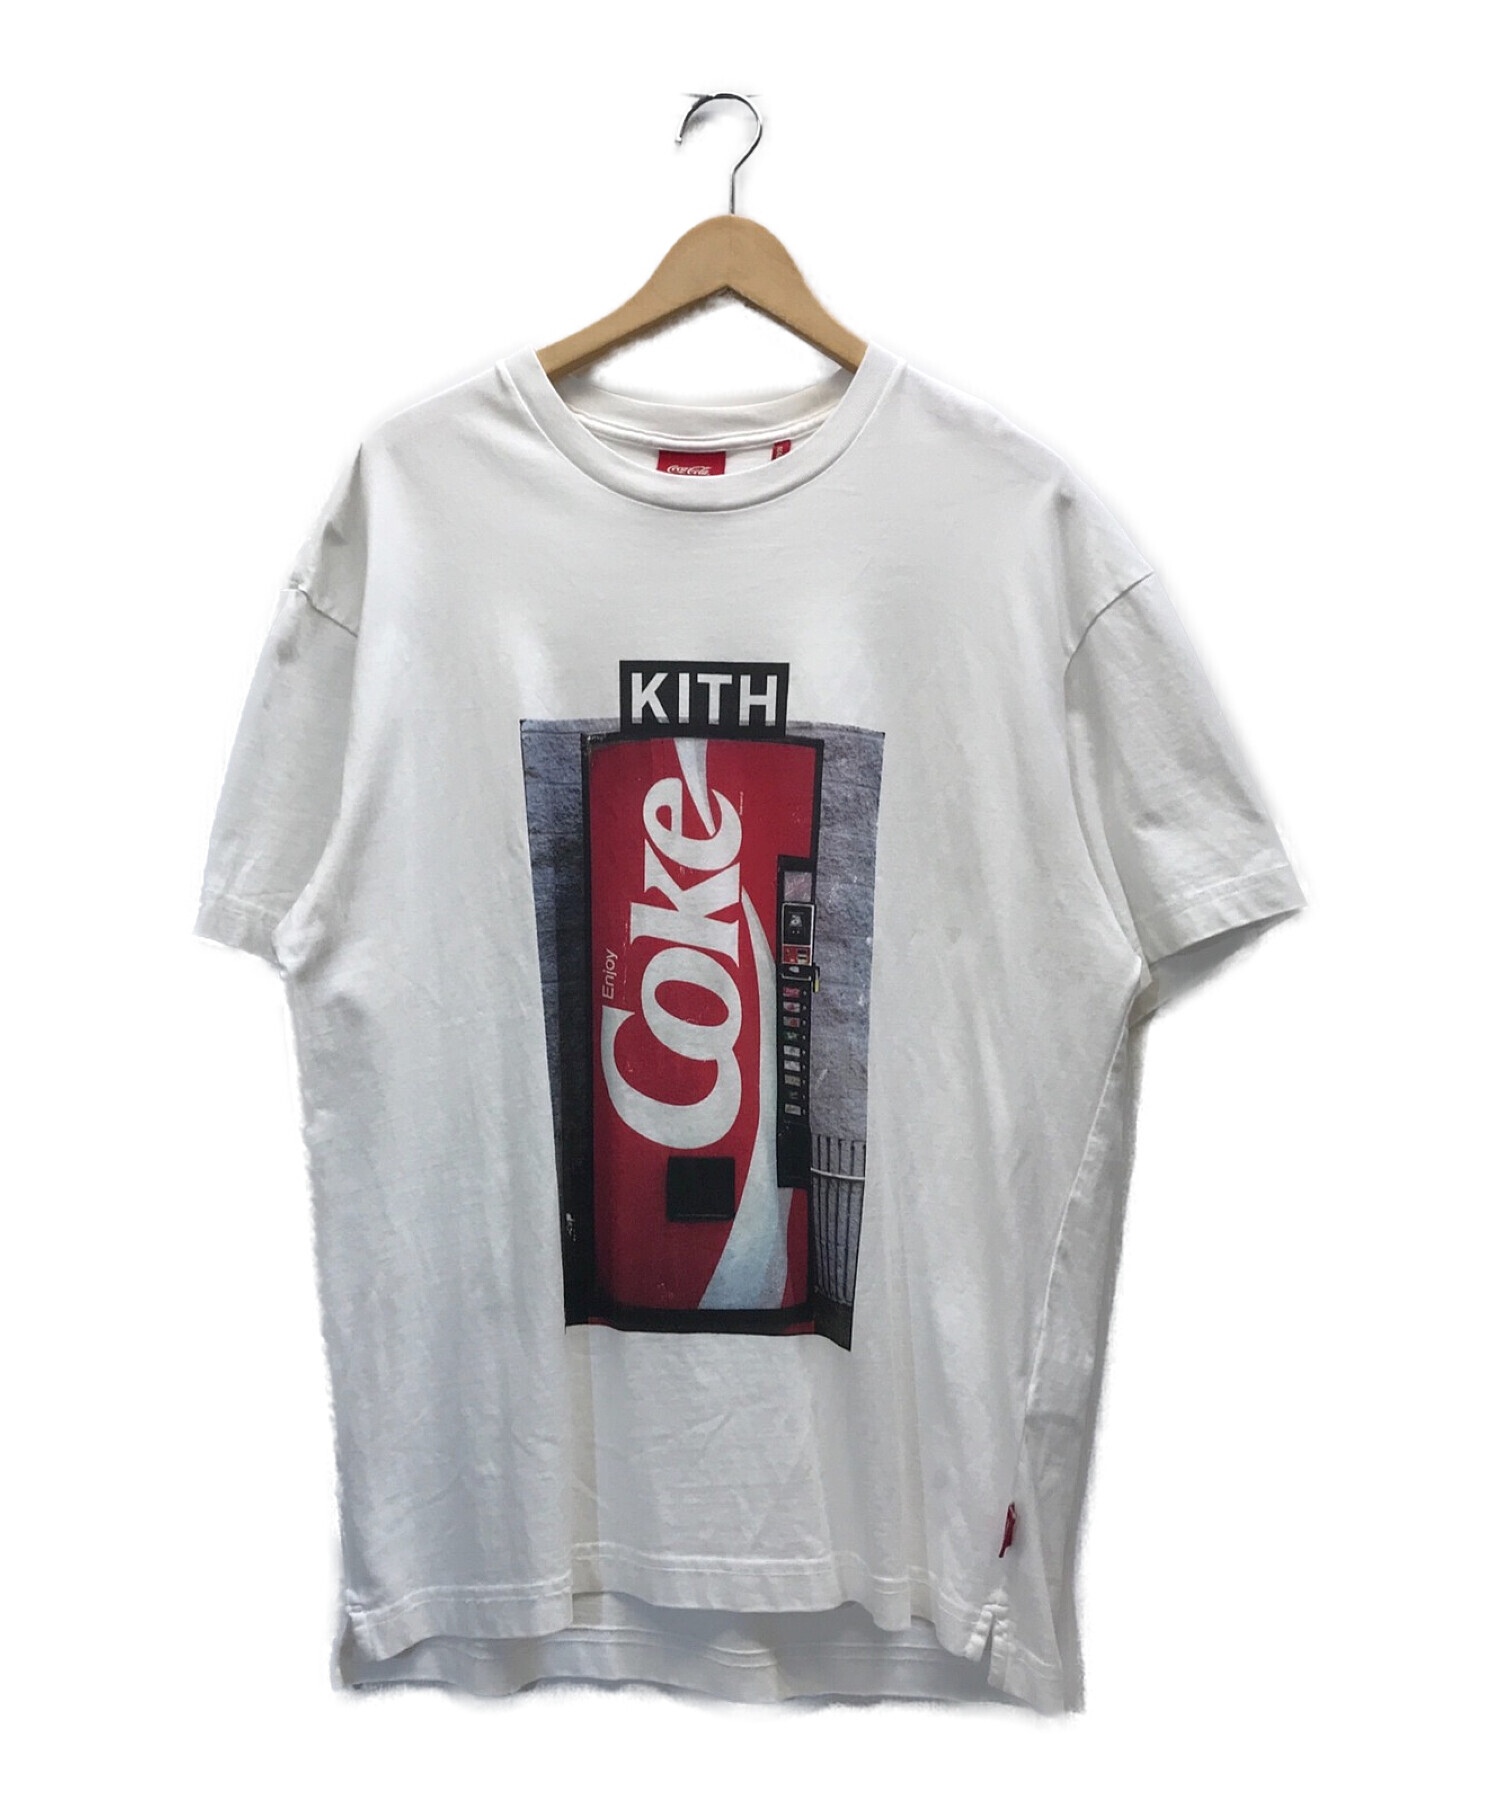 中古 古着通販 Coca Cola Kith コカコーラ キス コカコーラコラボロゴ半袖tシャツ ホワイト サイズ S ブランド 古着通販 トレファク公式 Trefac Fashion